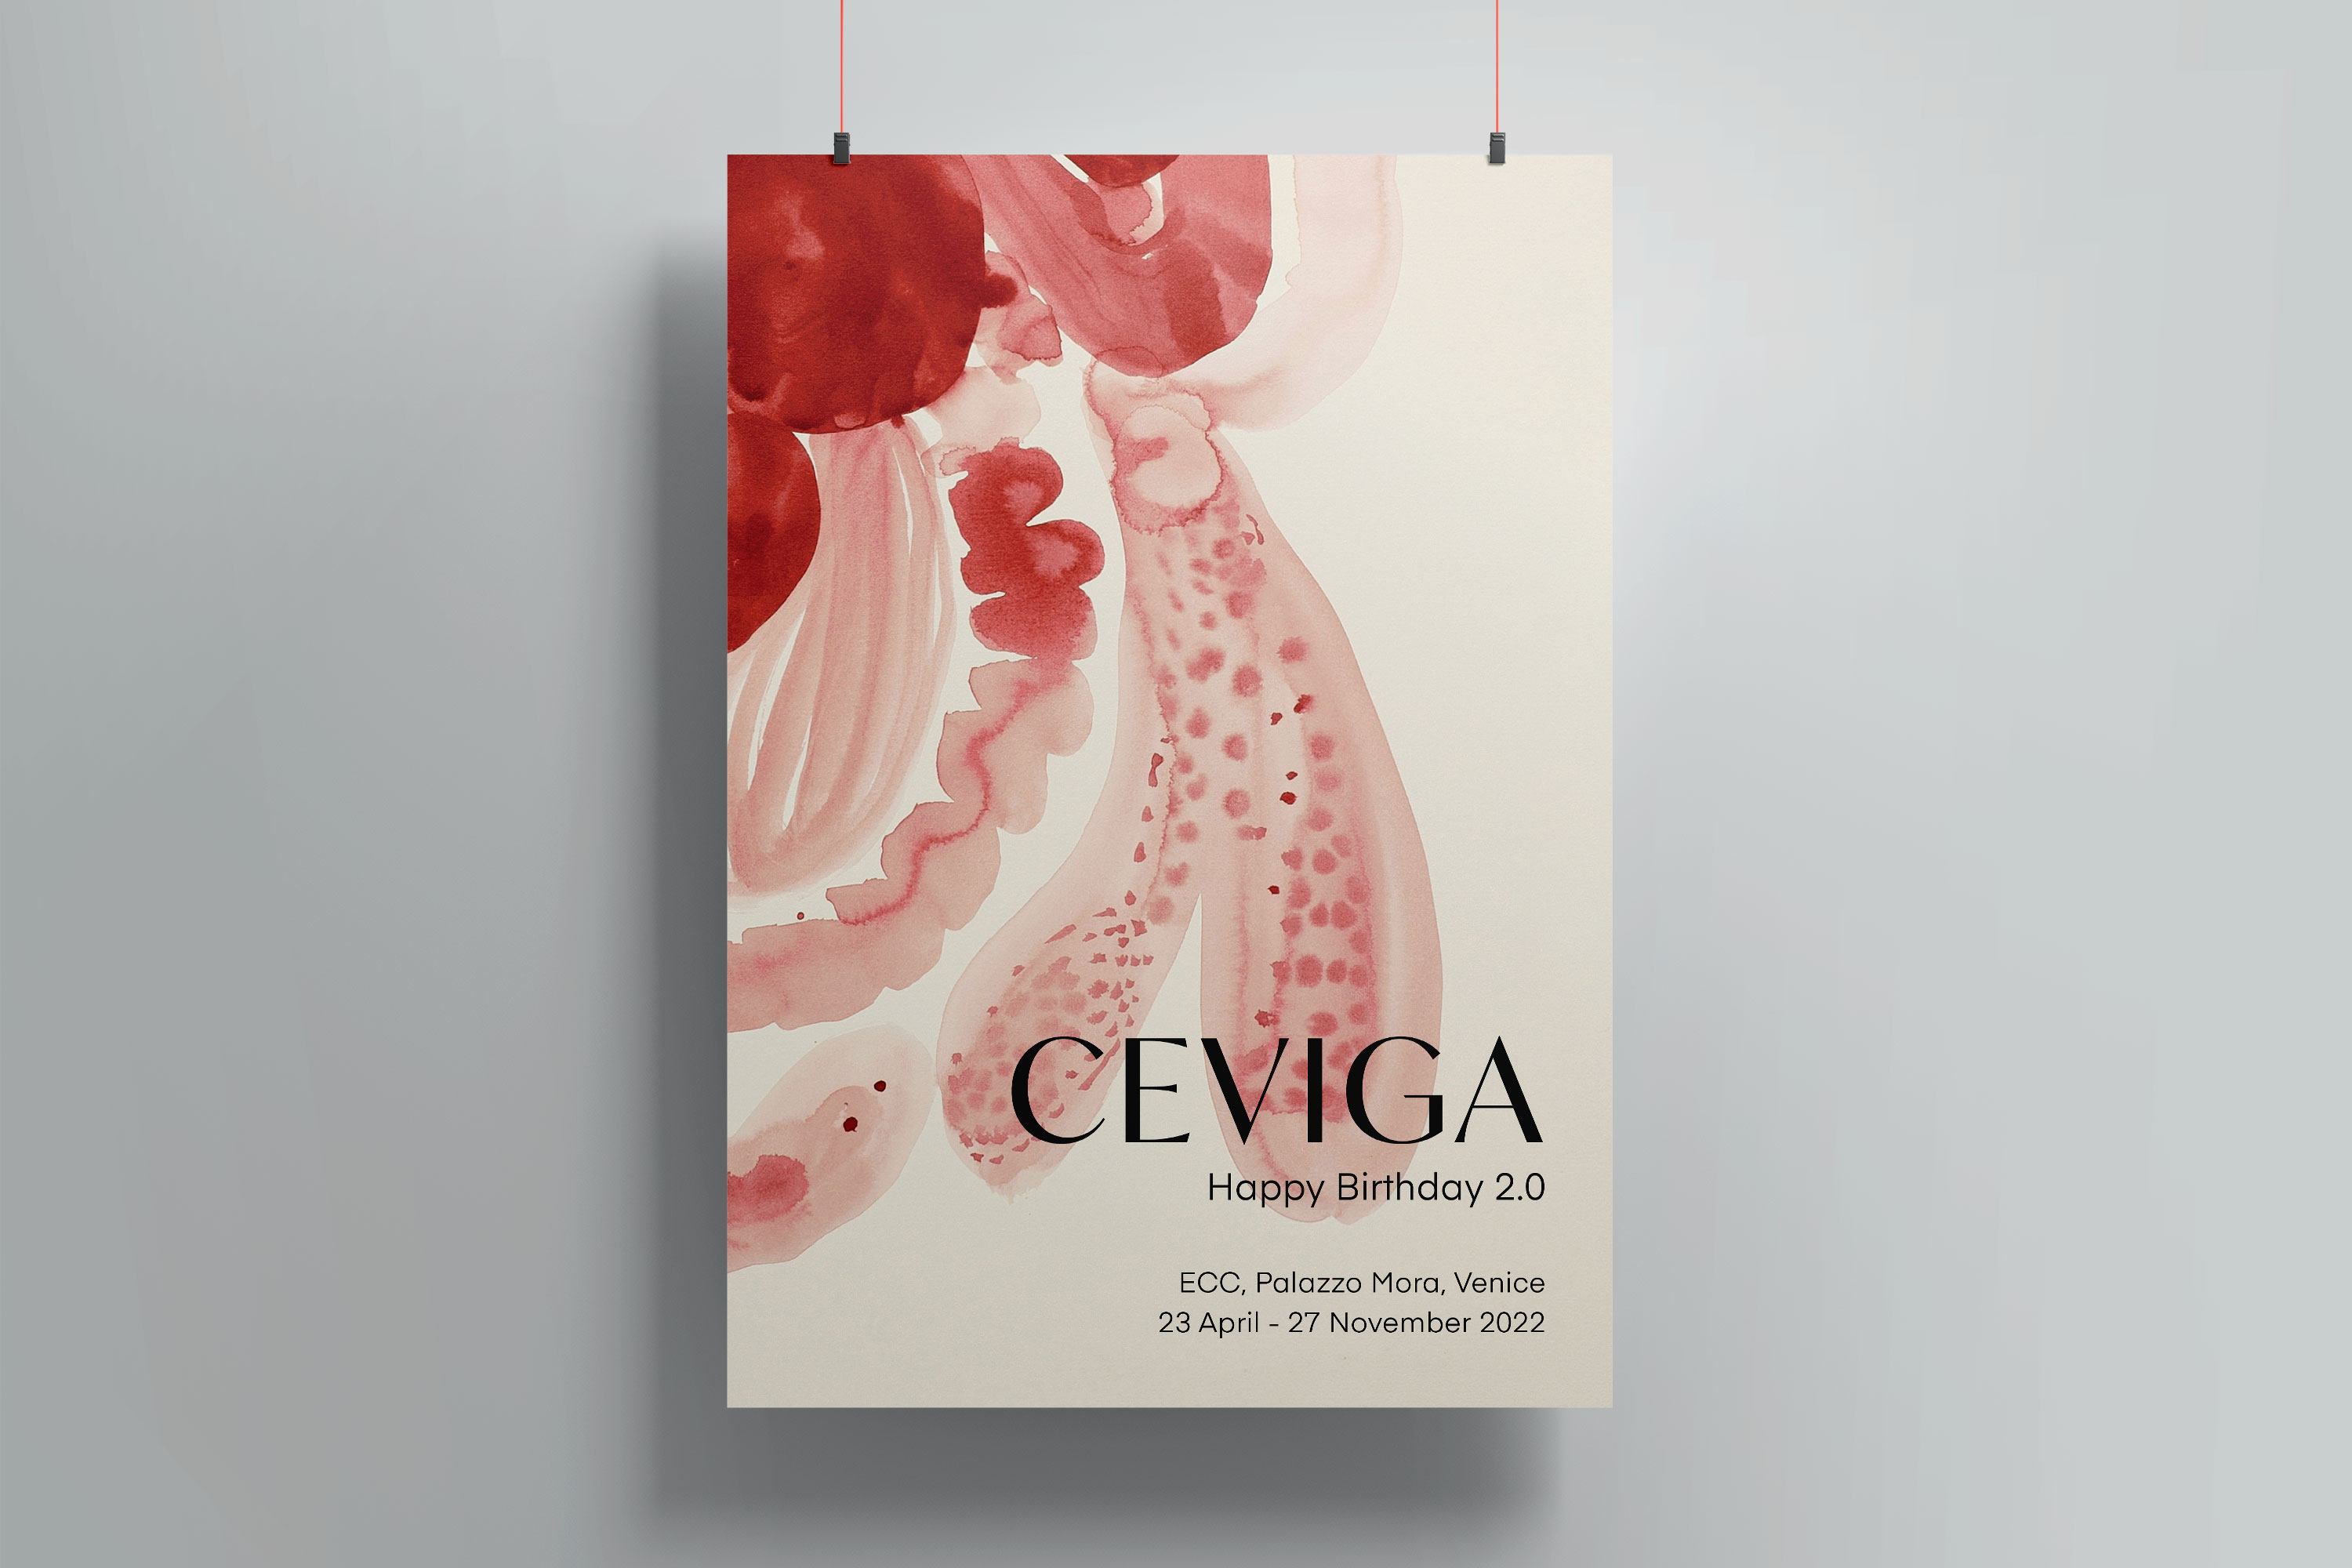 Ceviga | Elsa Benoldi Graphic Design